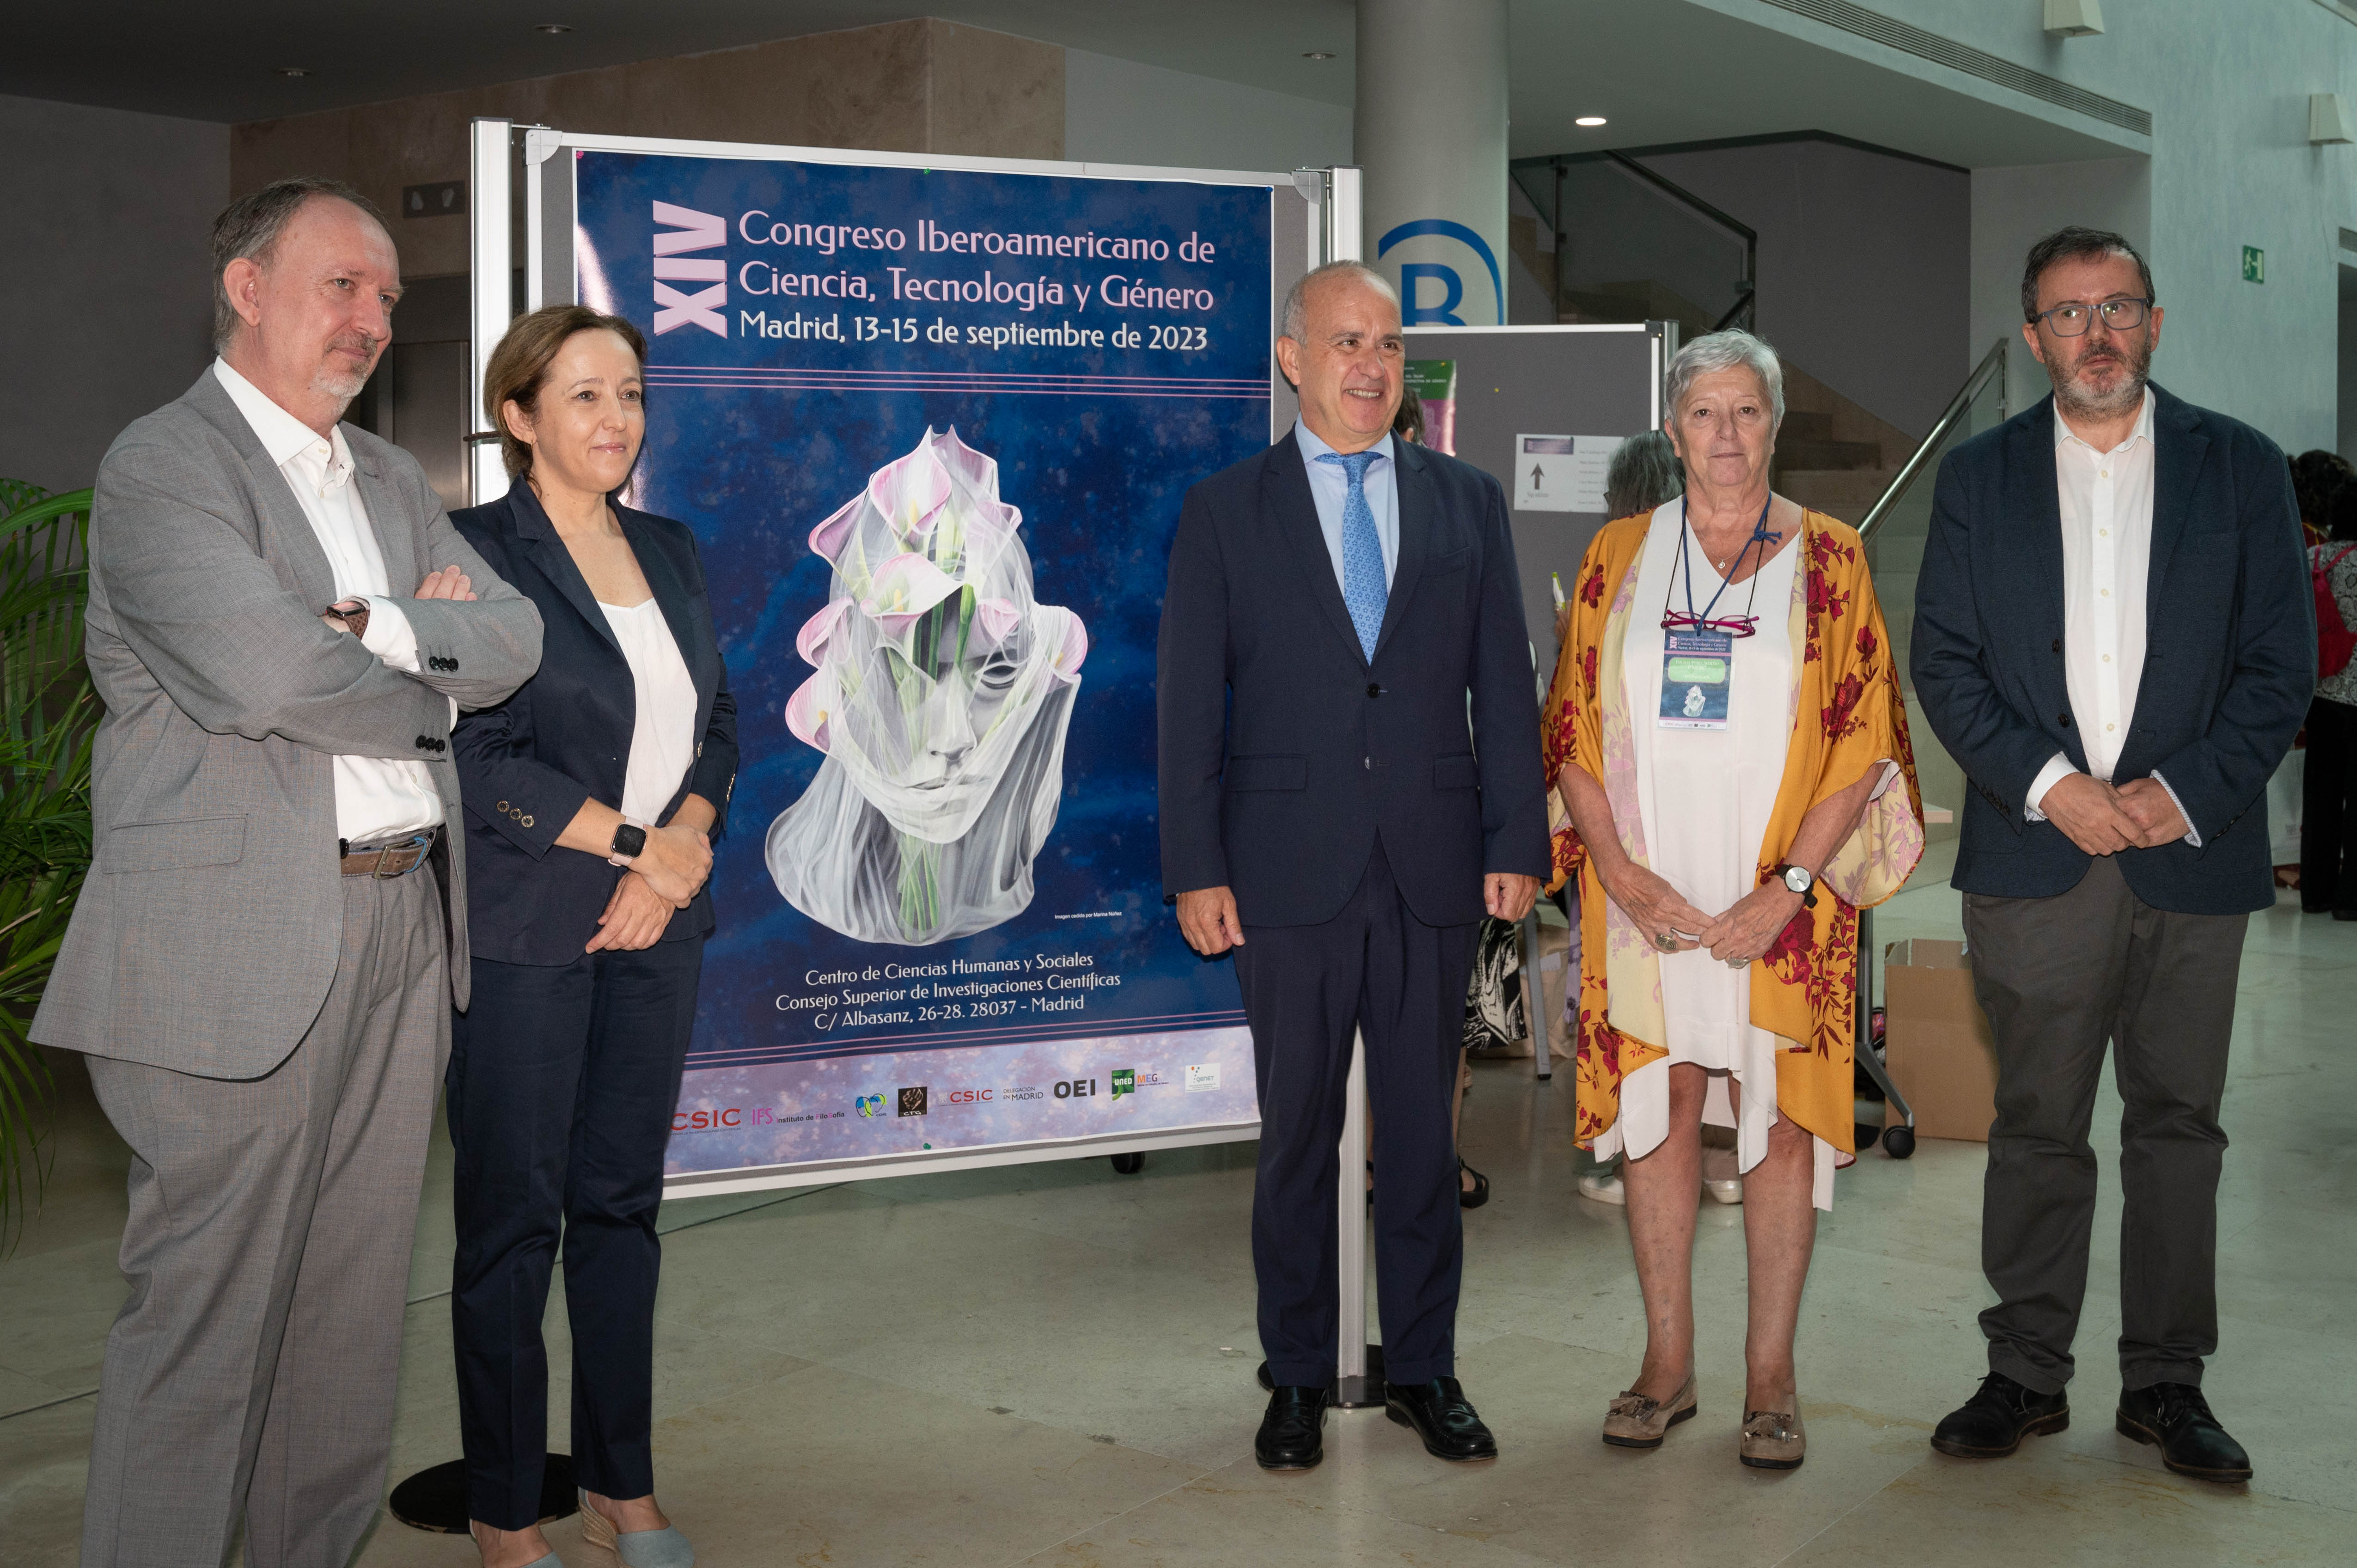 El XIV Congreso Iberoamericano de Ciencia, Tecnología y Género cierra con éxito su edición en Madrid